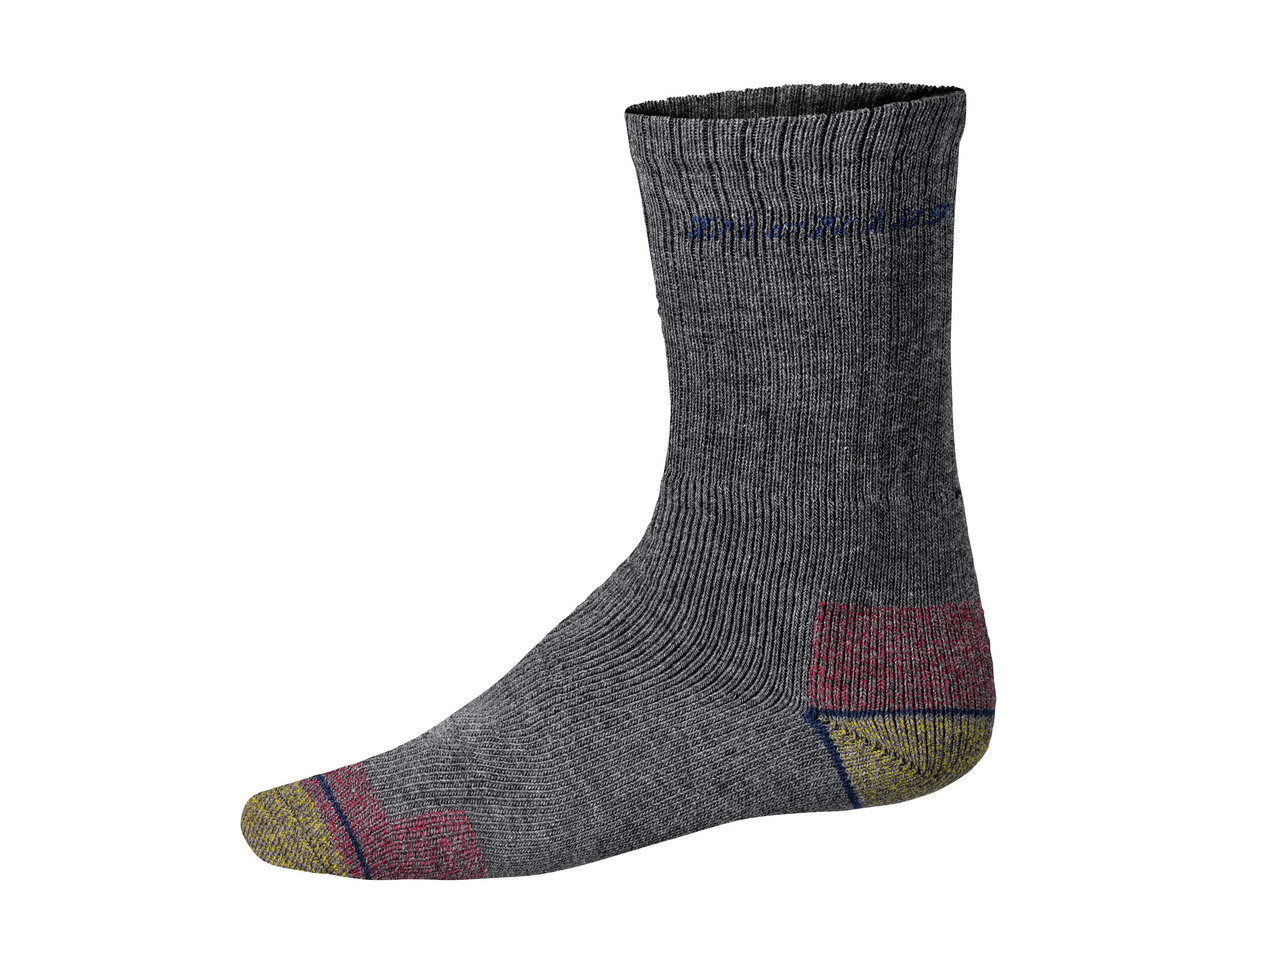 "Dunlop" Men's Work Socks, 3 pairs